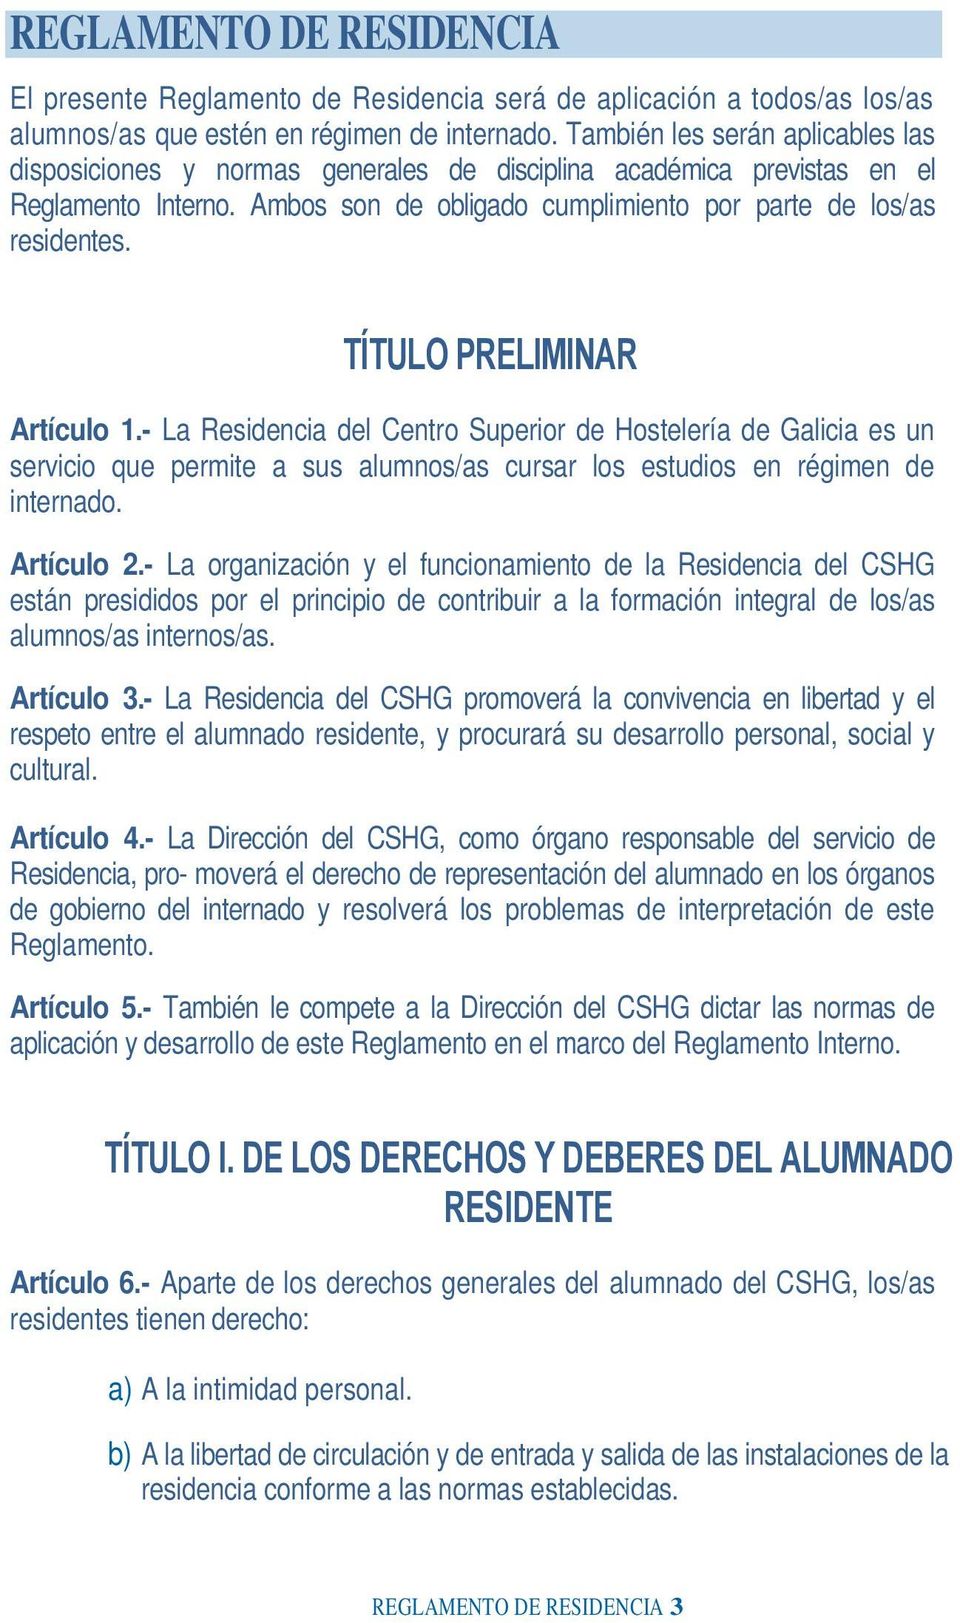 TÍTULO PRELIMINAR Artículo 1.- La Residencia del Centro Superior de Hostelería de Galicia es un servicio que permite a sus alumnos/as cursar los estudios en régimen de internado. Artículo 2.